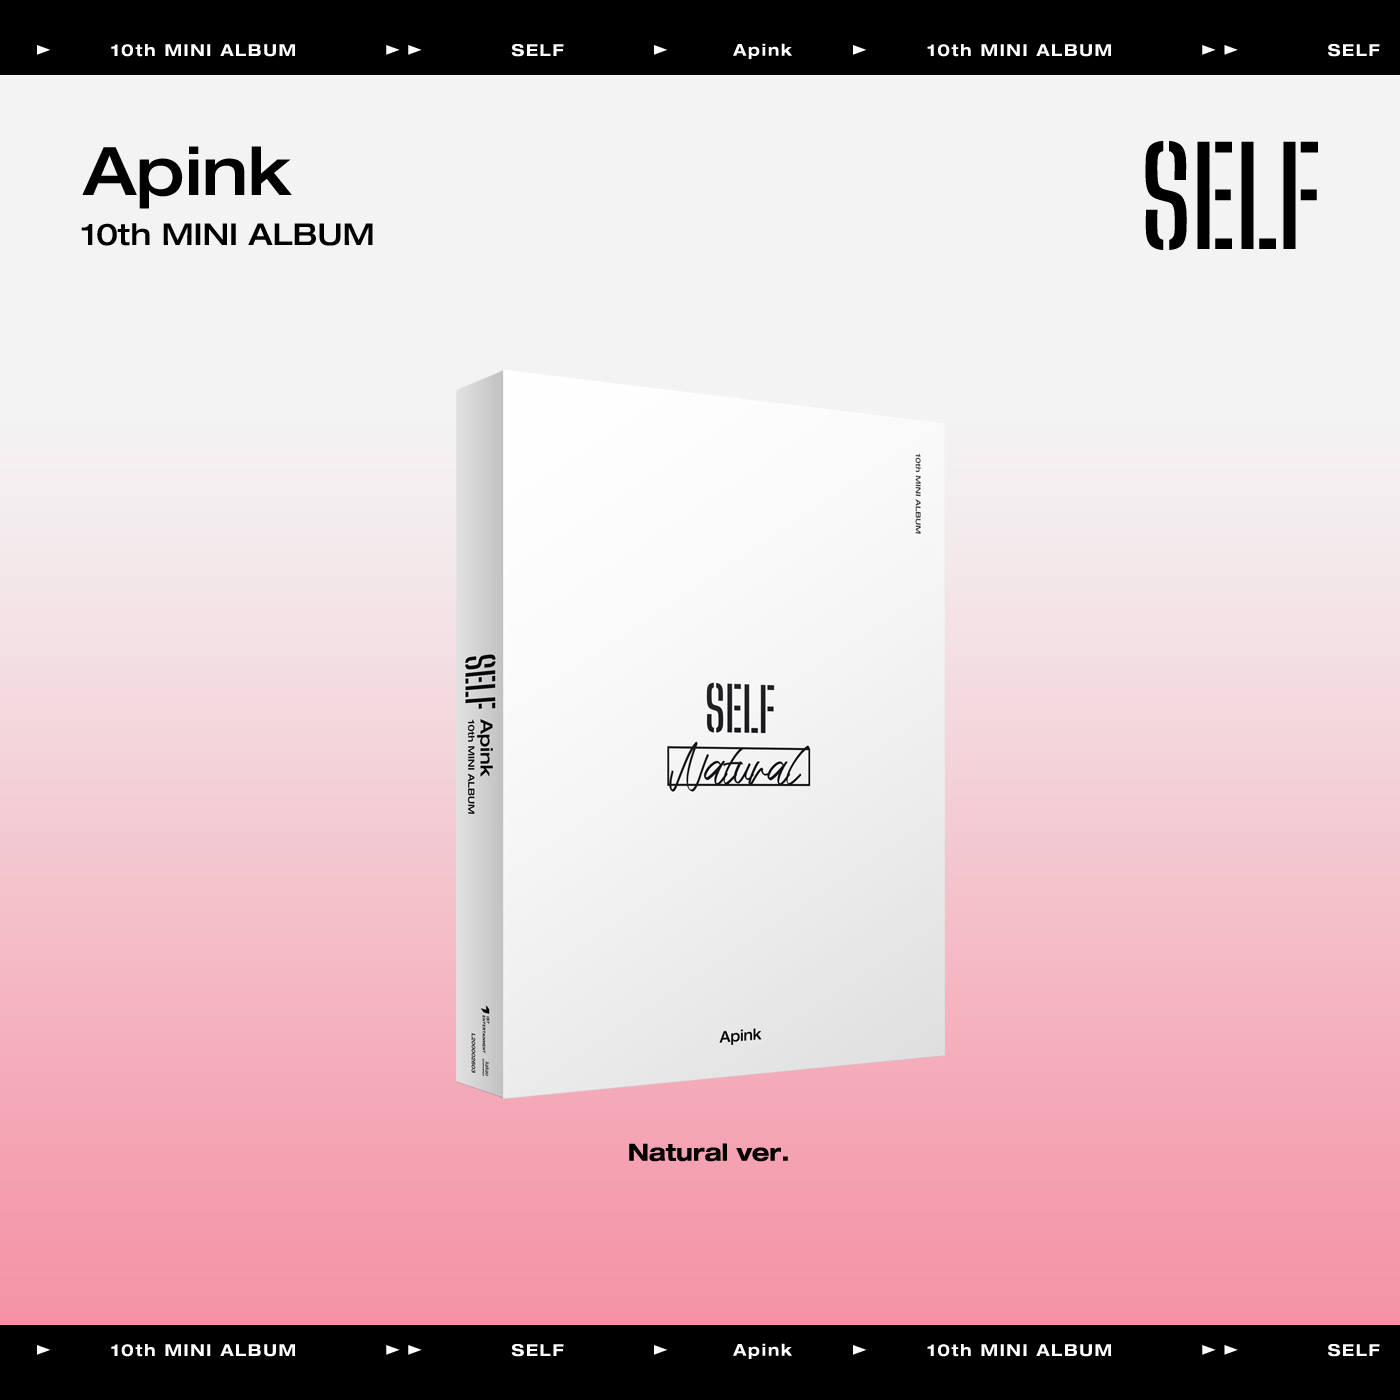 Apink - 10th Mini Album [SELF] (Natural ver.)